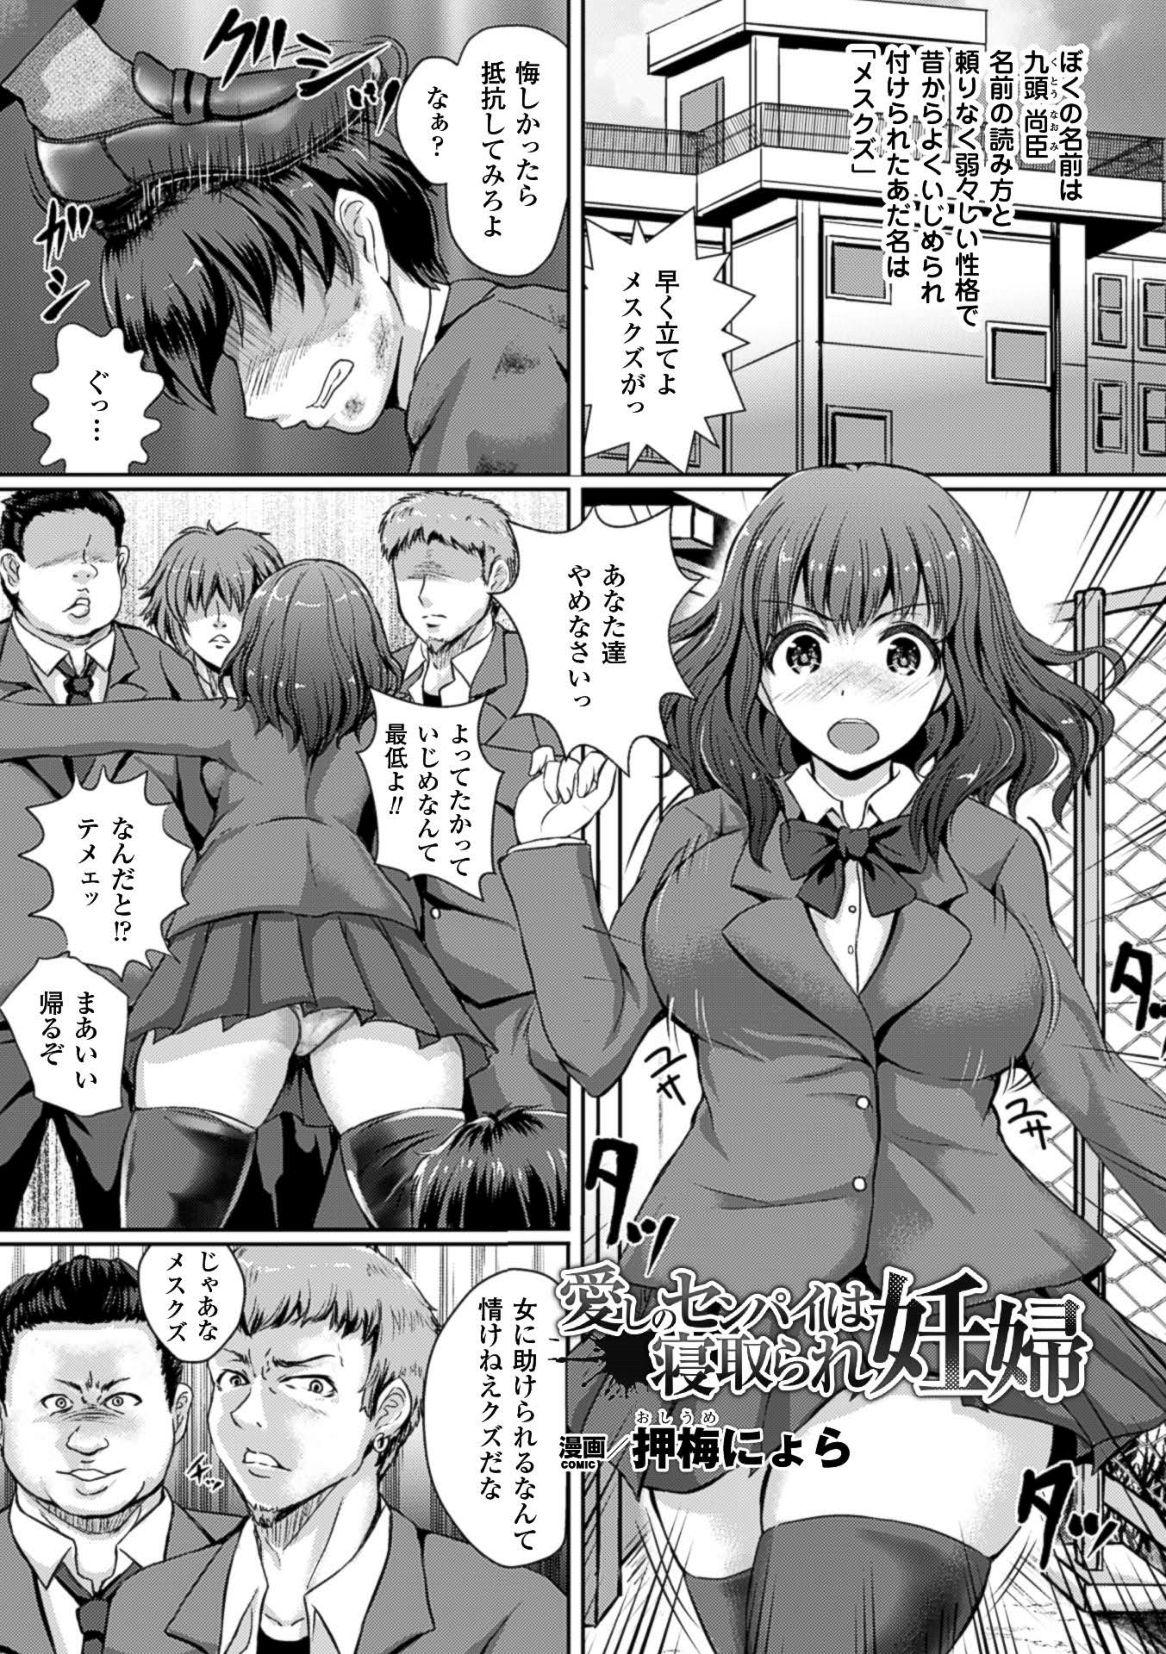 2D Comic Magazine Botebara Sex de Nikubenki Ochi! Vol. 2 22